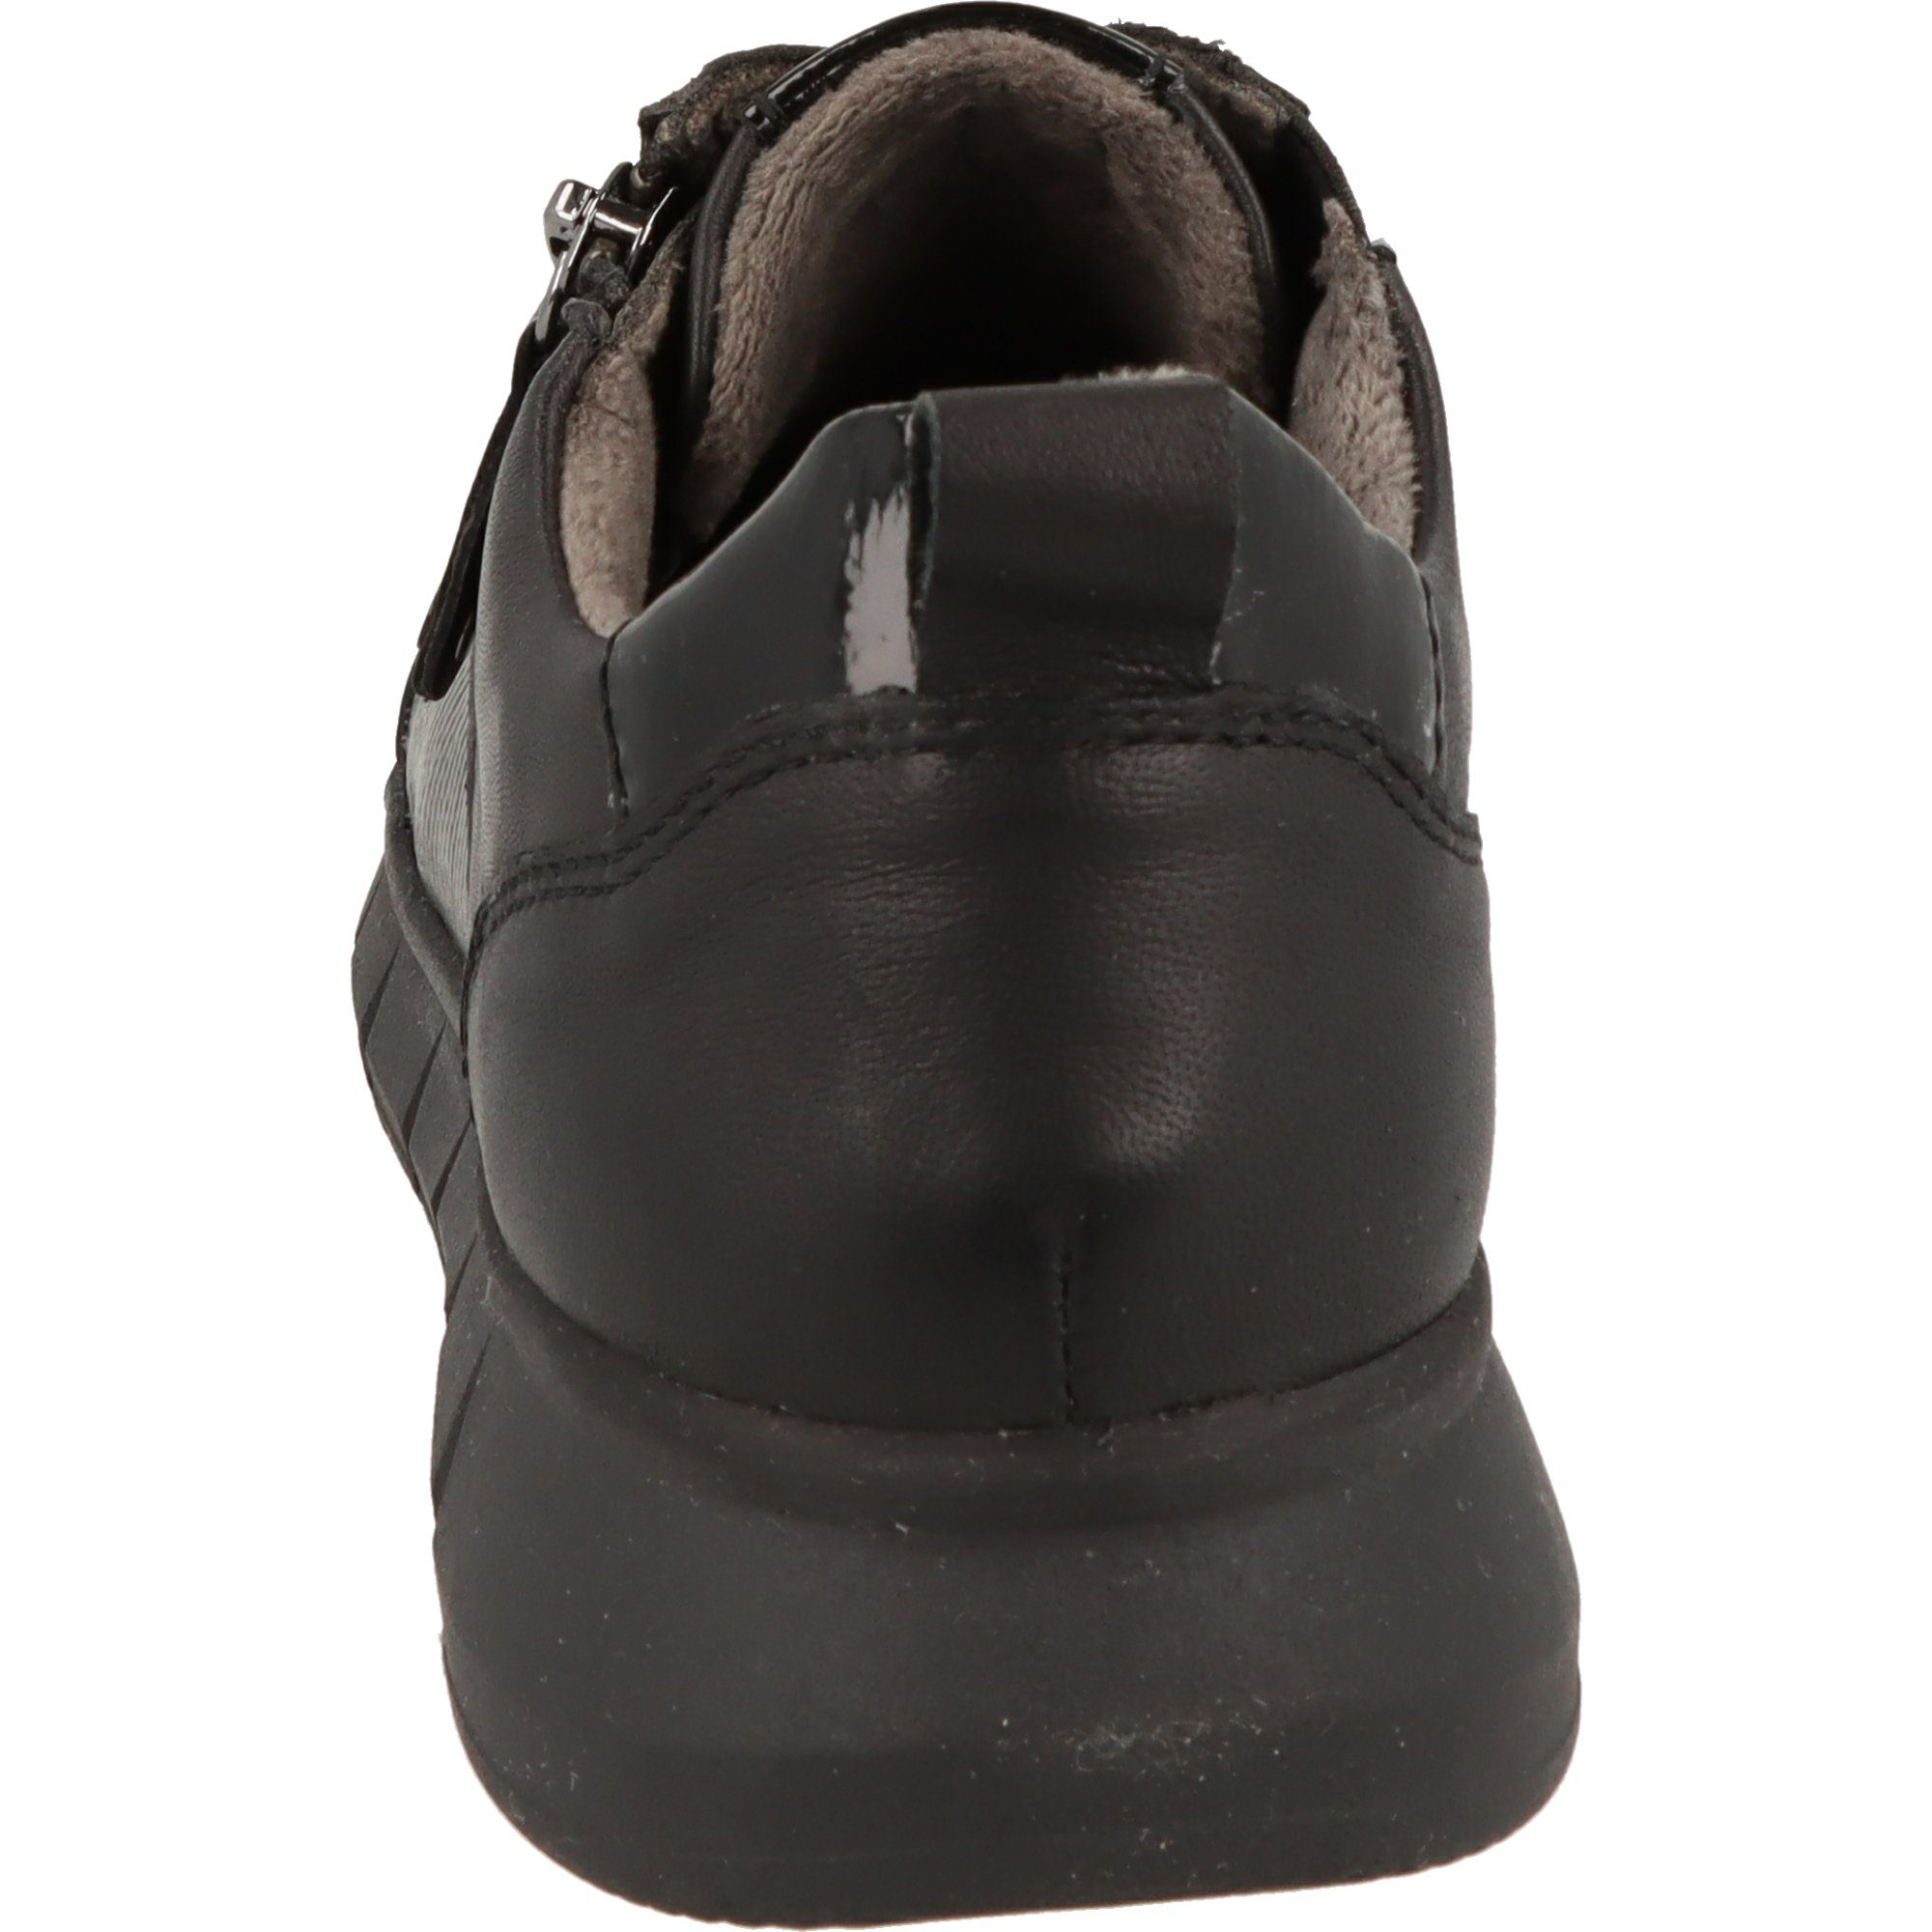 Damen Tamaris Reißverschluss, Leder Schnürschuh Sneaker Wechselfußbett, 8-83705-41 Schuhe Halbschuhe COMFORT Fit Comfort